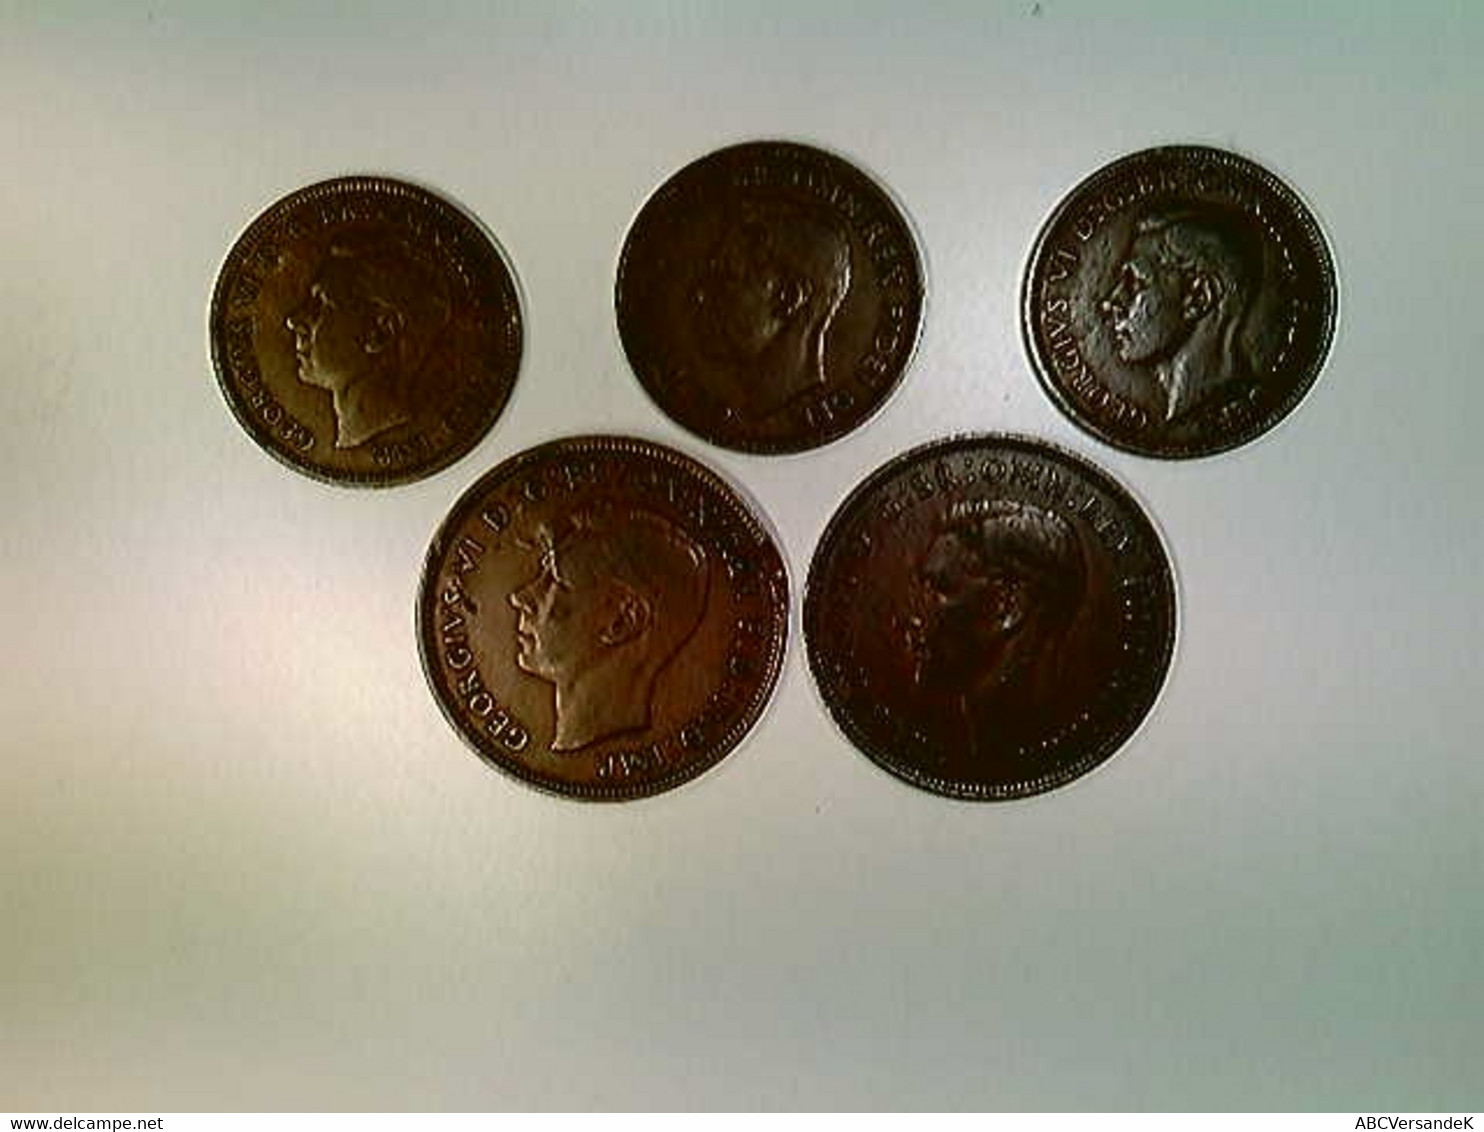 Münzen, 3x Half Penny, 2x One Penny, 1937-49, England, Konvolut - Numismatik